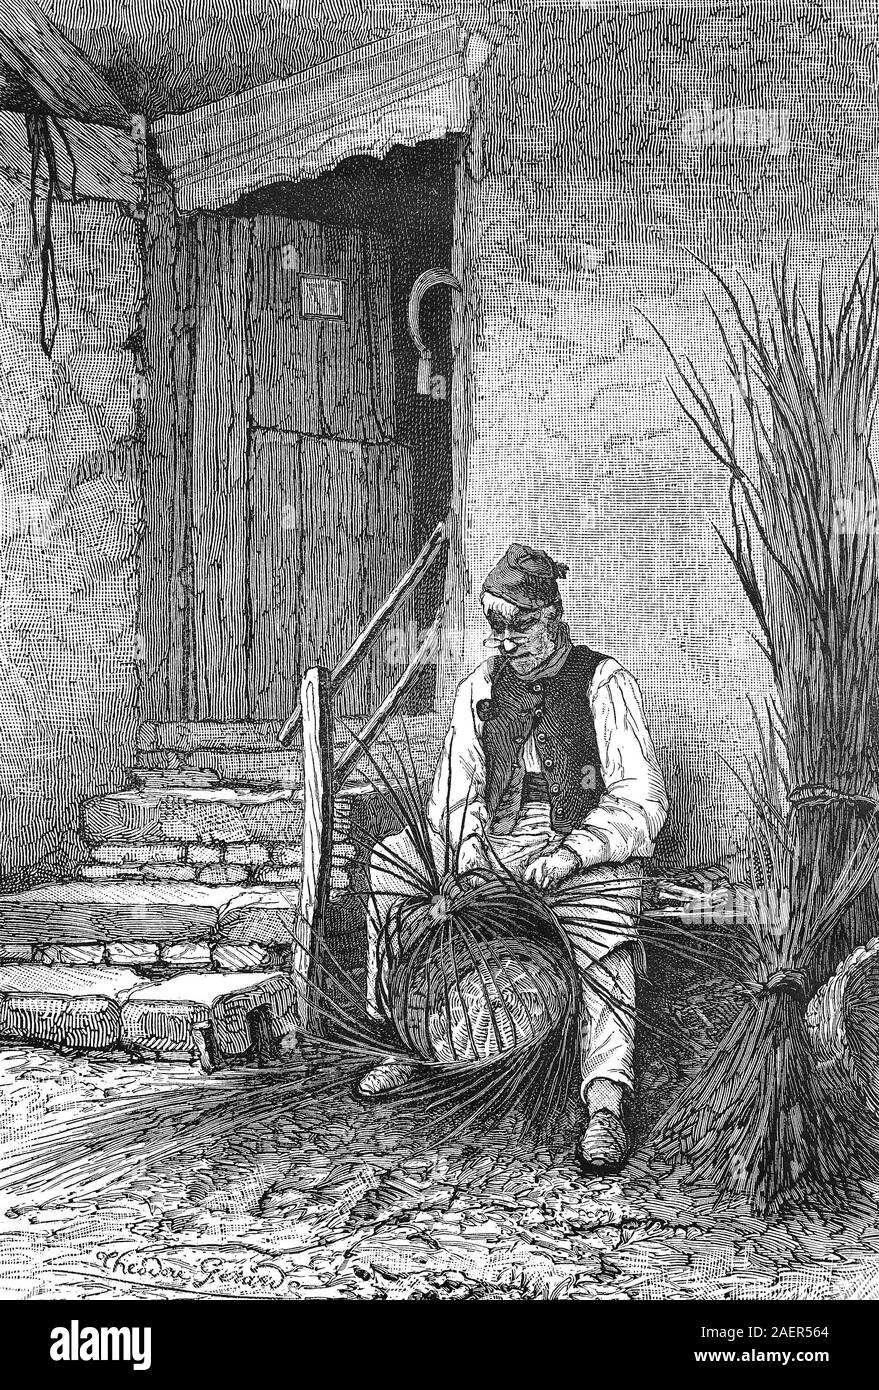 Wicker sits in front of his house and wilts a wicker basket  /  Korbflechter sitzt vor seinem Haus und flechtet einen Weidenkorb, Reproduction of an original 19th century print / Reproduktion von einem Originaldruck aus dem 19. Jahrhundert Stock Photo